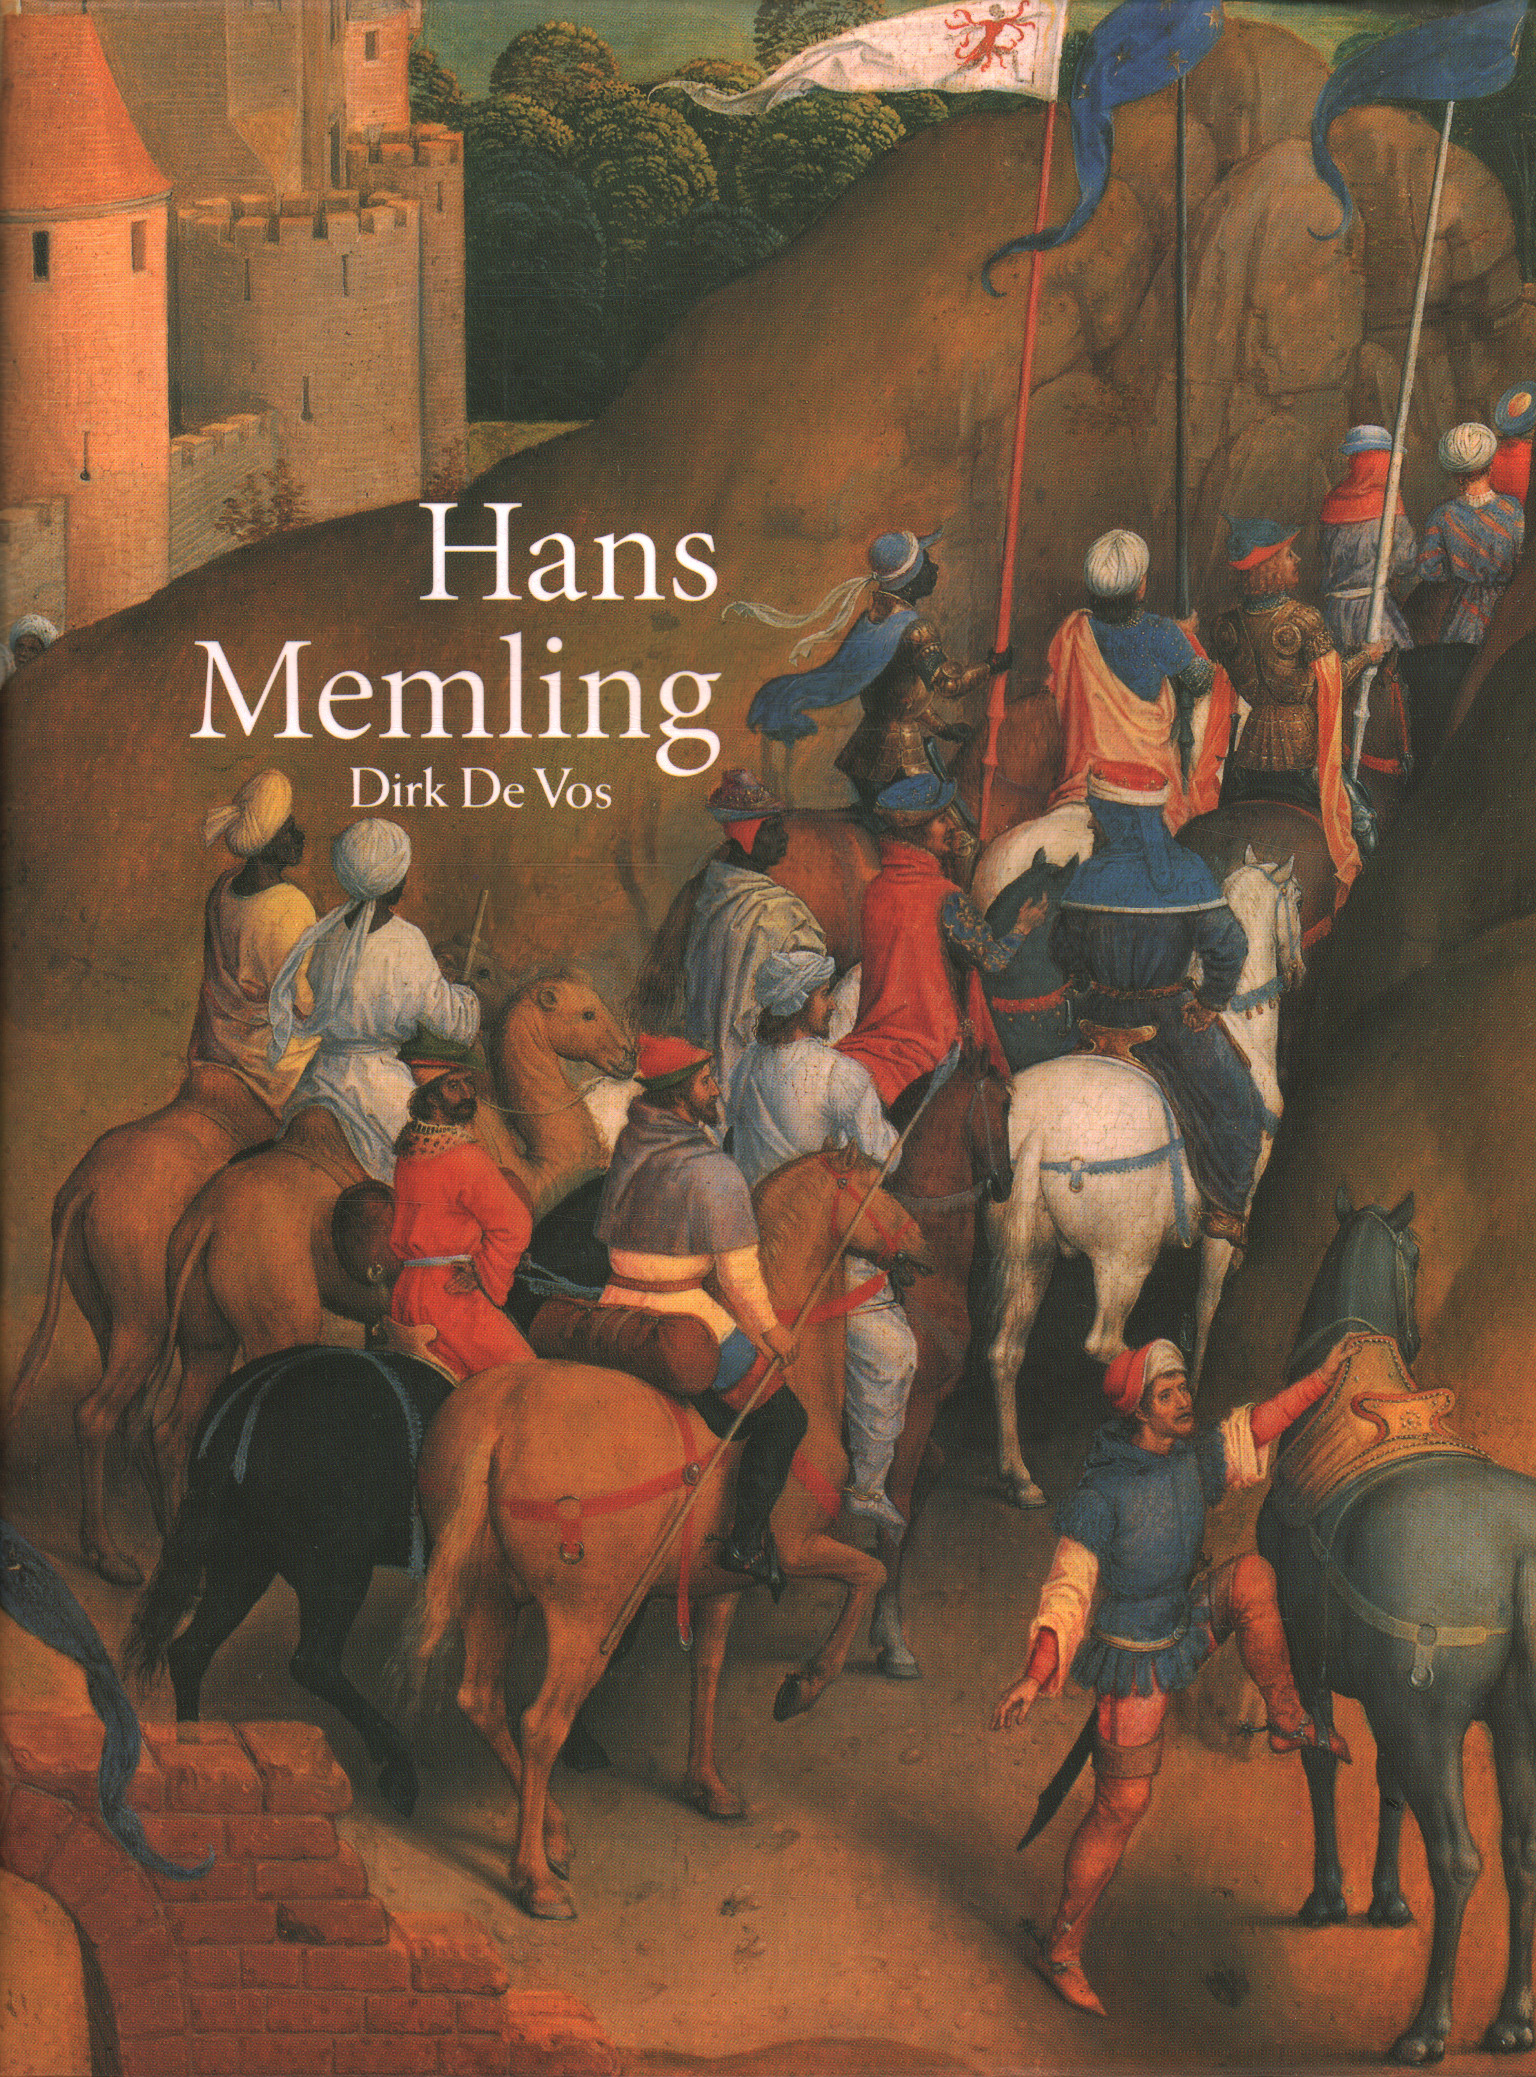 Hans Memling. The complete oeuvre, Dirk De Vos